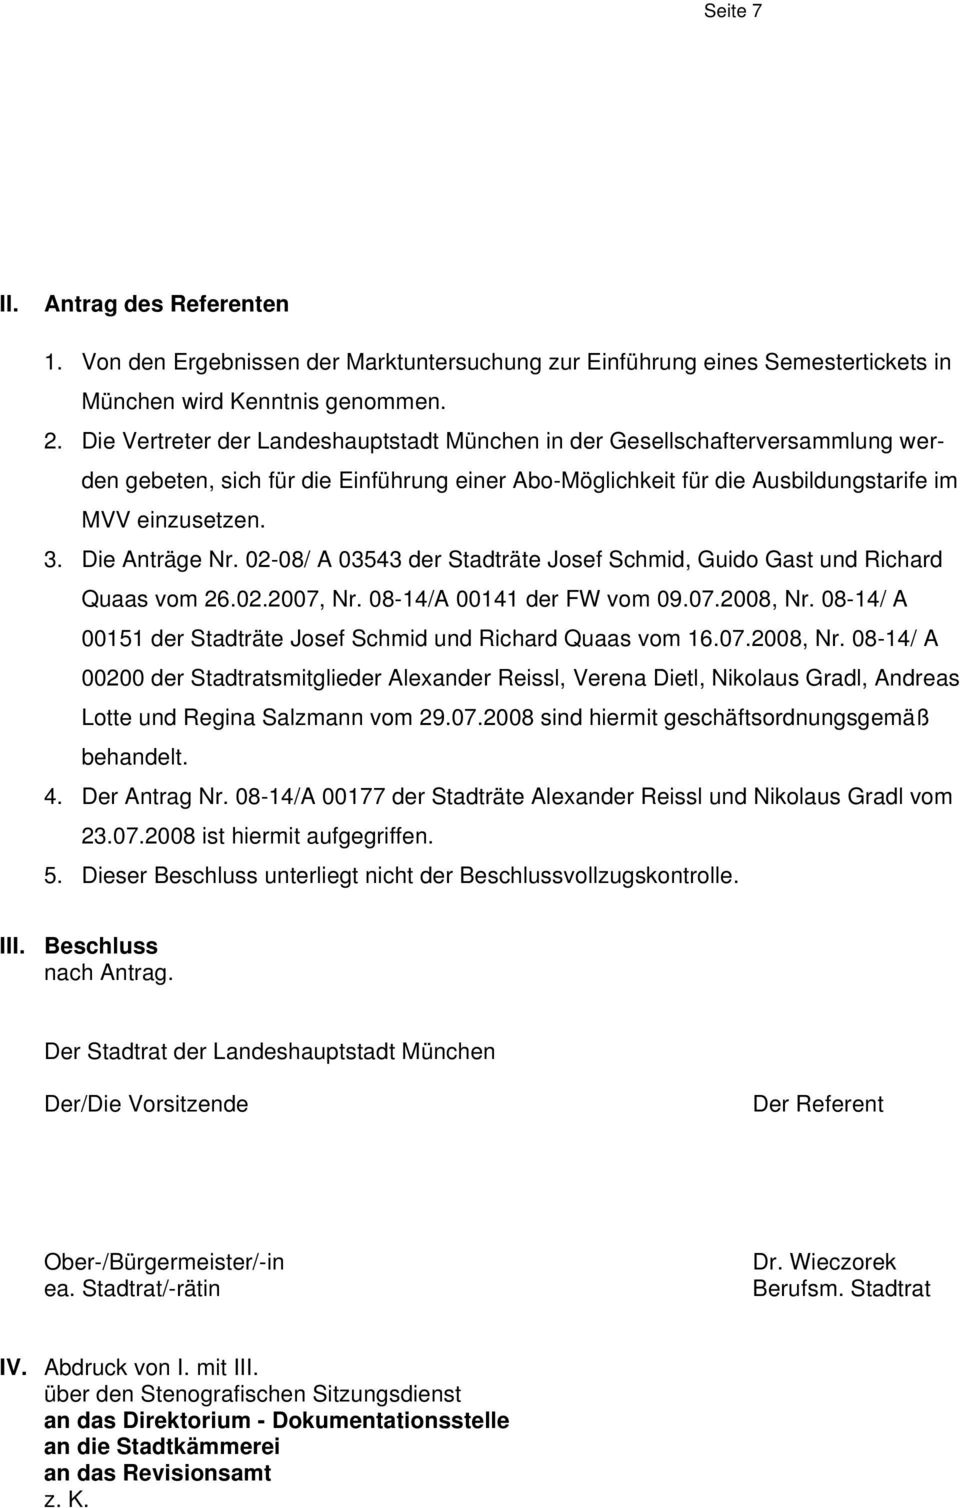 Die Anträge Nr. 02-08/ A 03543 der Stadträte Josef Schmid, Guido Gast und Richard Quaas vom 26.02.2007, Nr. 08-14/A 00141 der FW vom 09.07.2008, Nr.